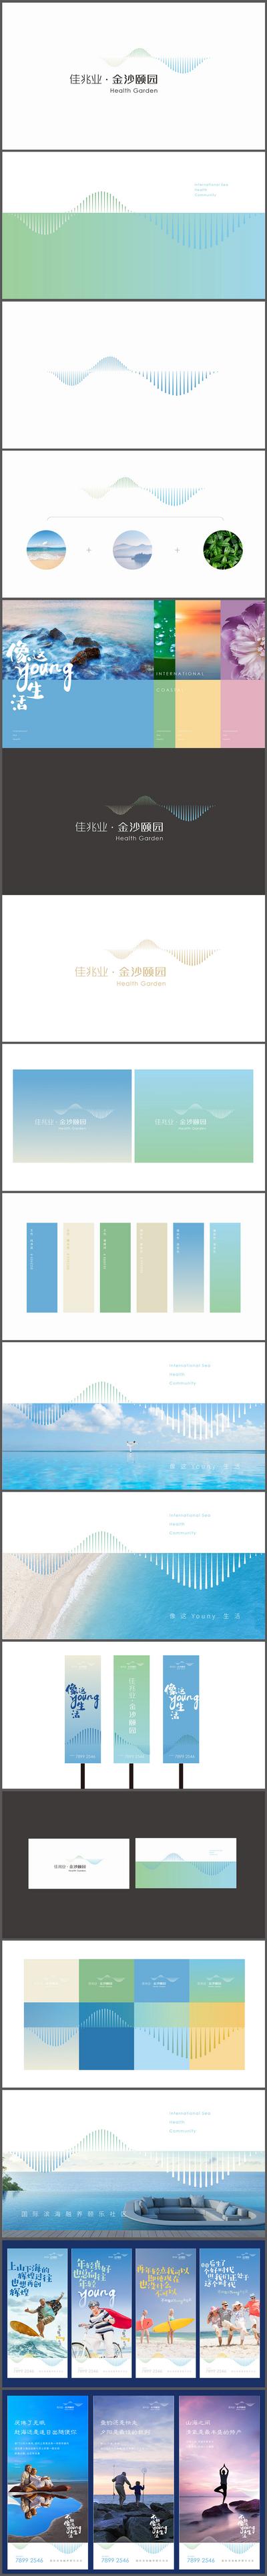 南门网 VI设计 LOGO 房地产  道旗 广告展板 提案 康养  滨海 海景 度假 